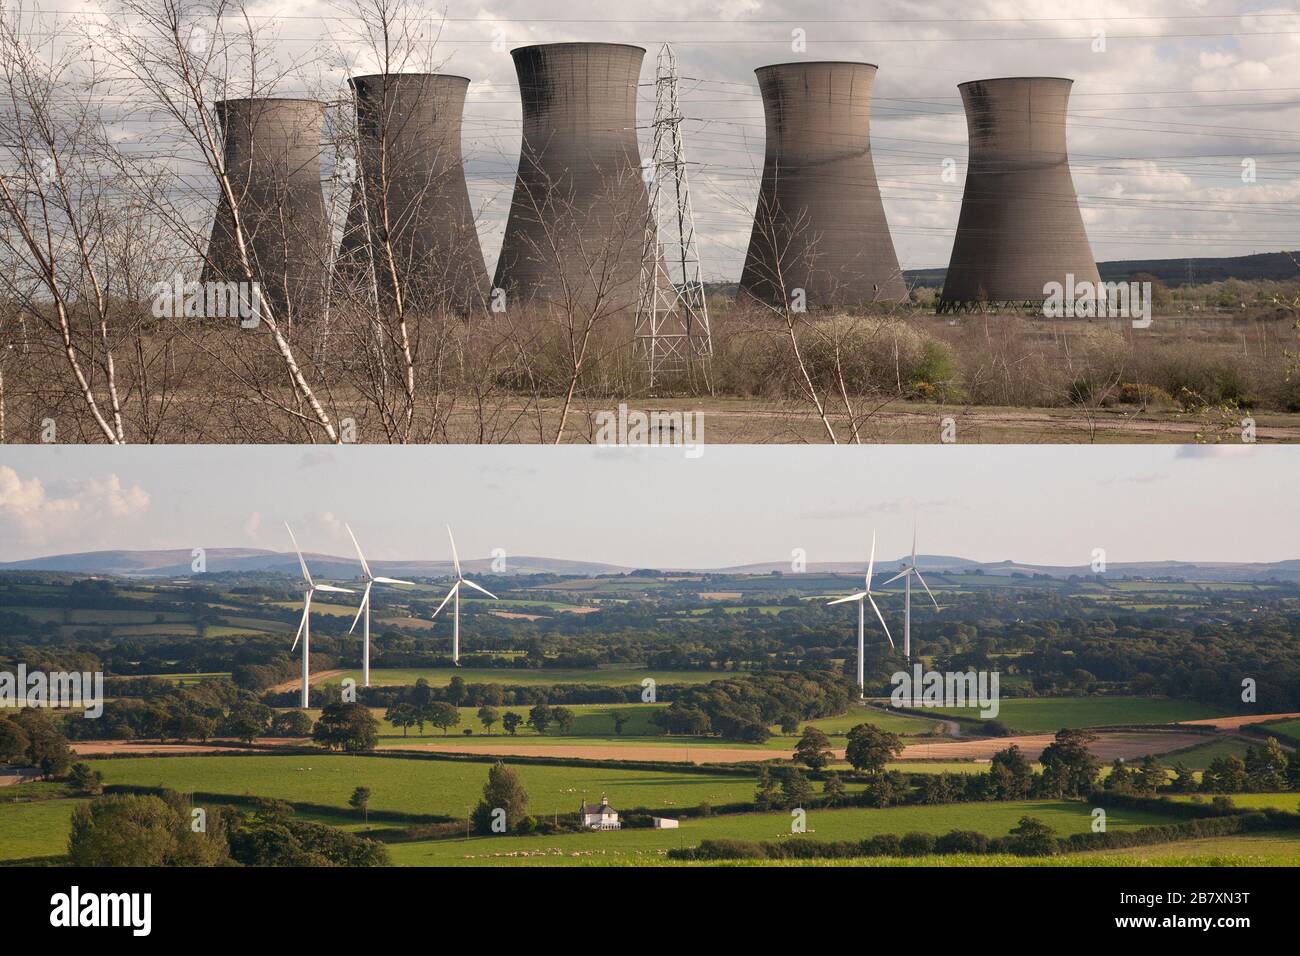 Saubere Energie und umweltschädliche Energieerzeugung. Atomkraftwerke und Elektrizitätspylone im Vergleich zu Windkraftanlagen Stockfoto